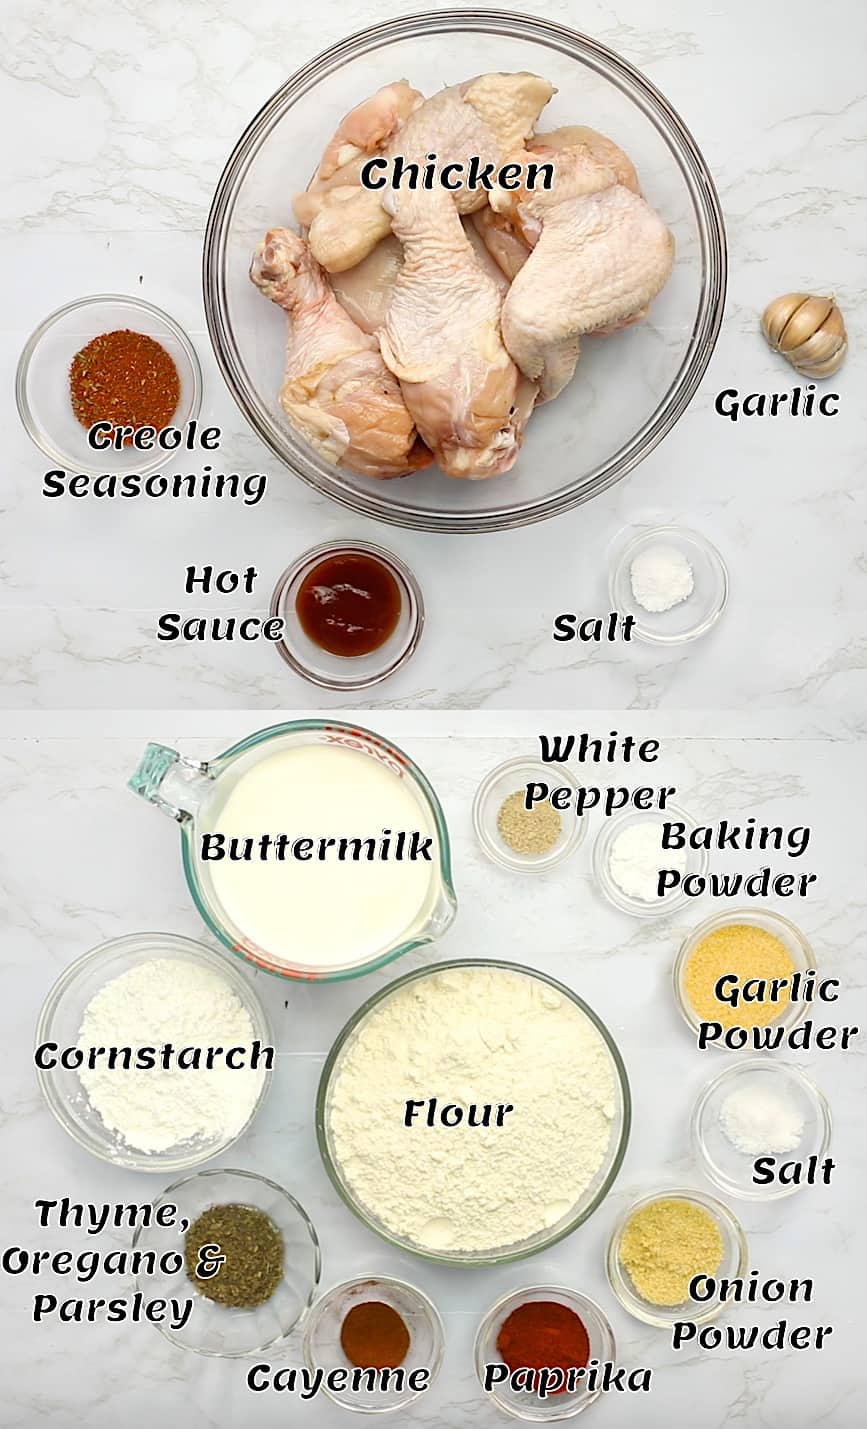 Chicken seasoning recipe